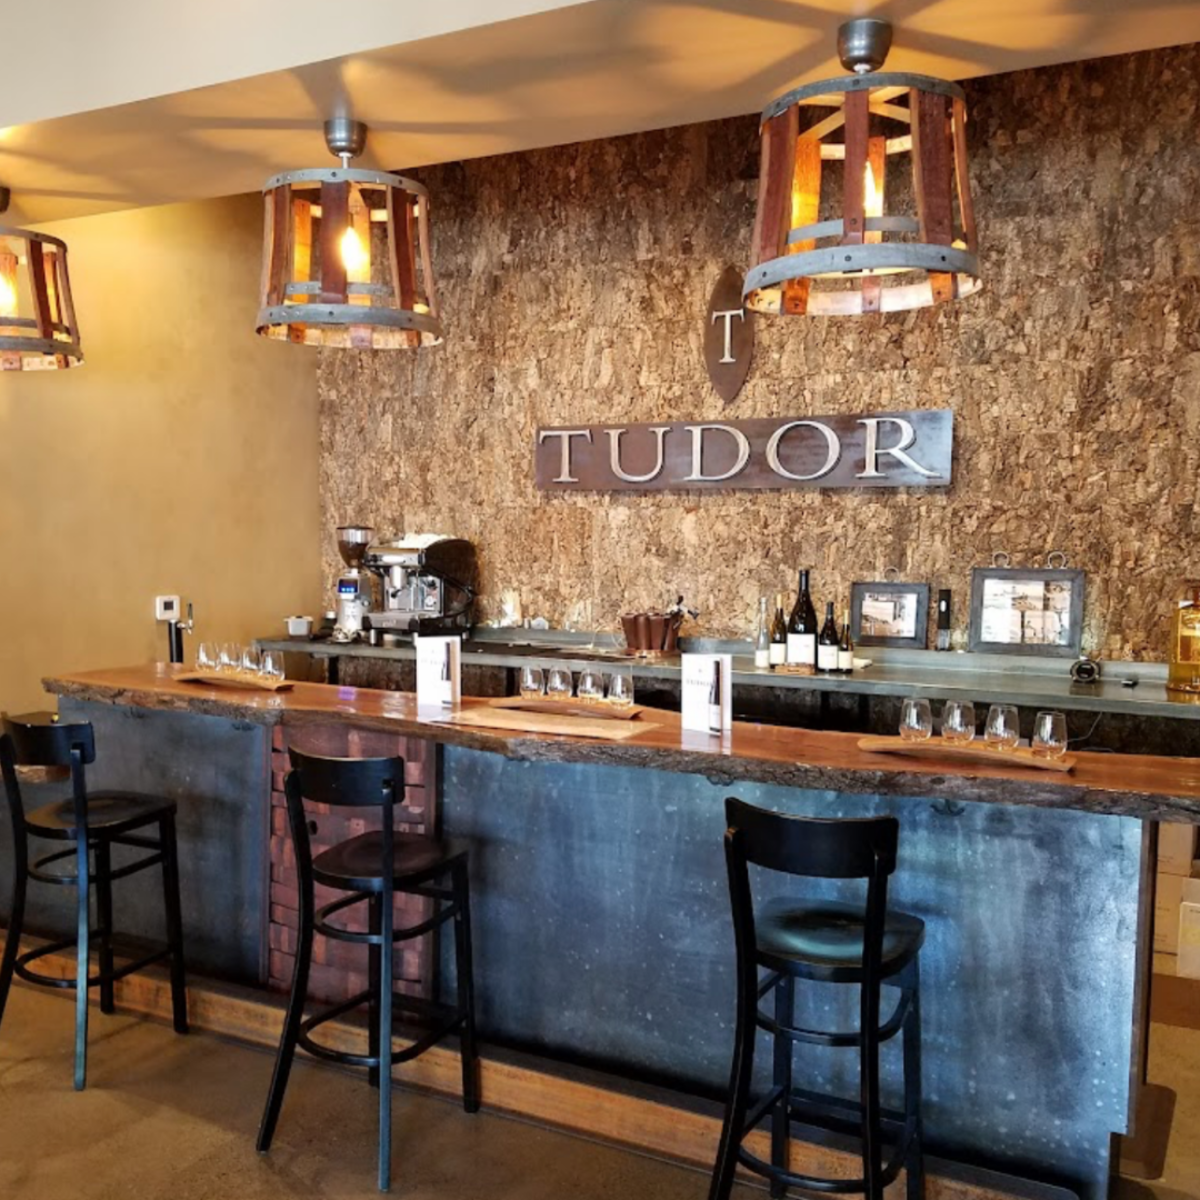 Tudor Tasting Room